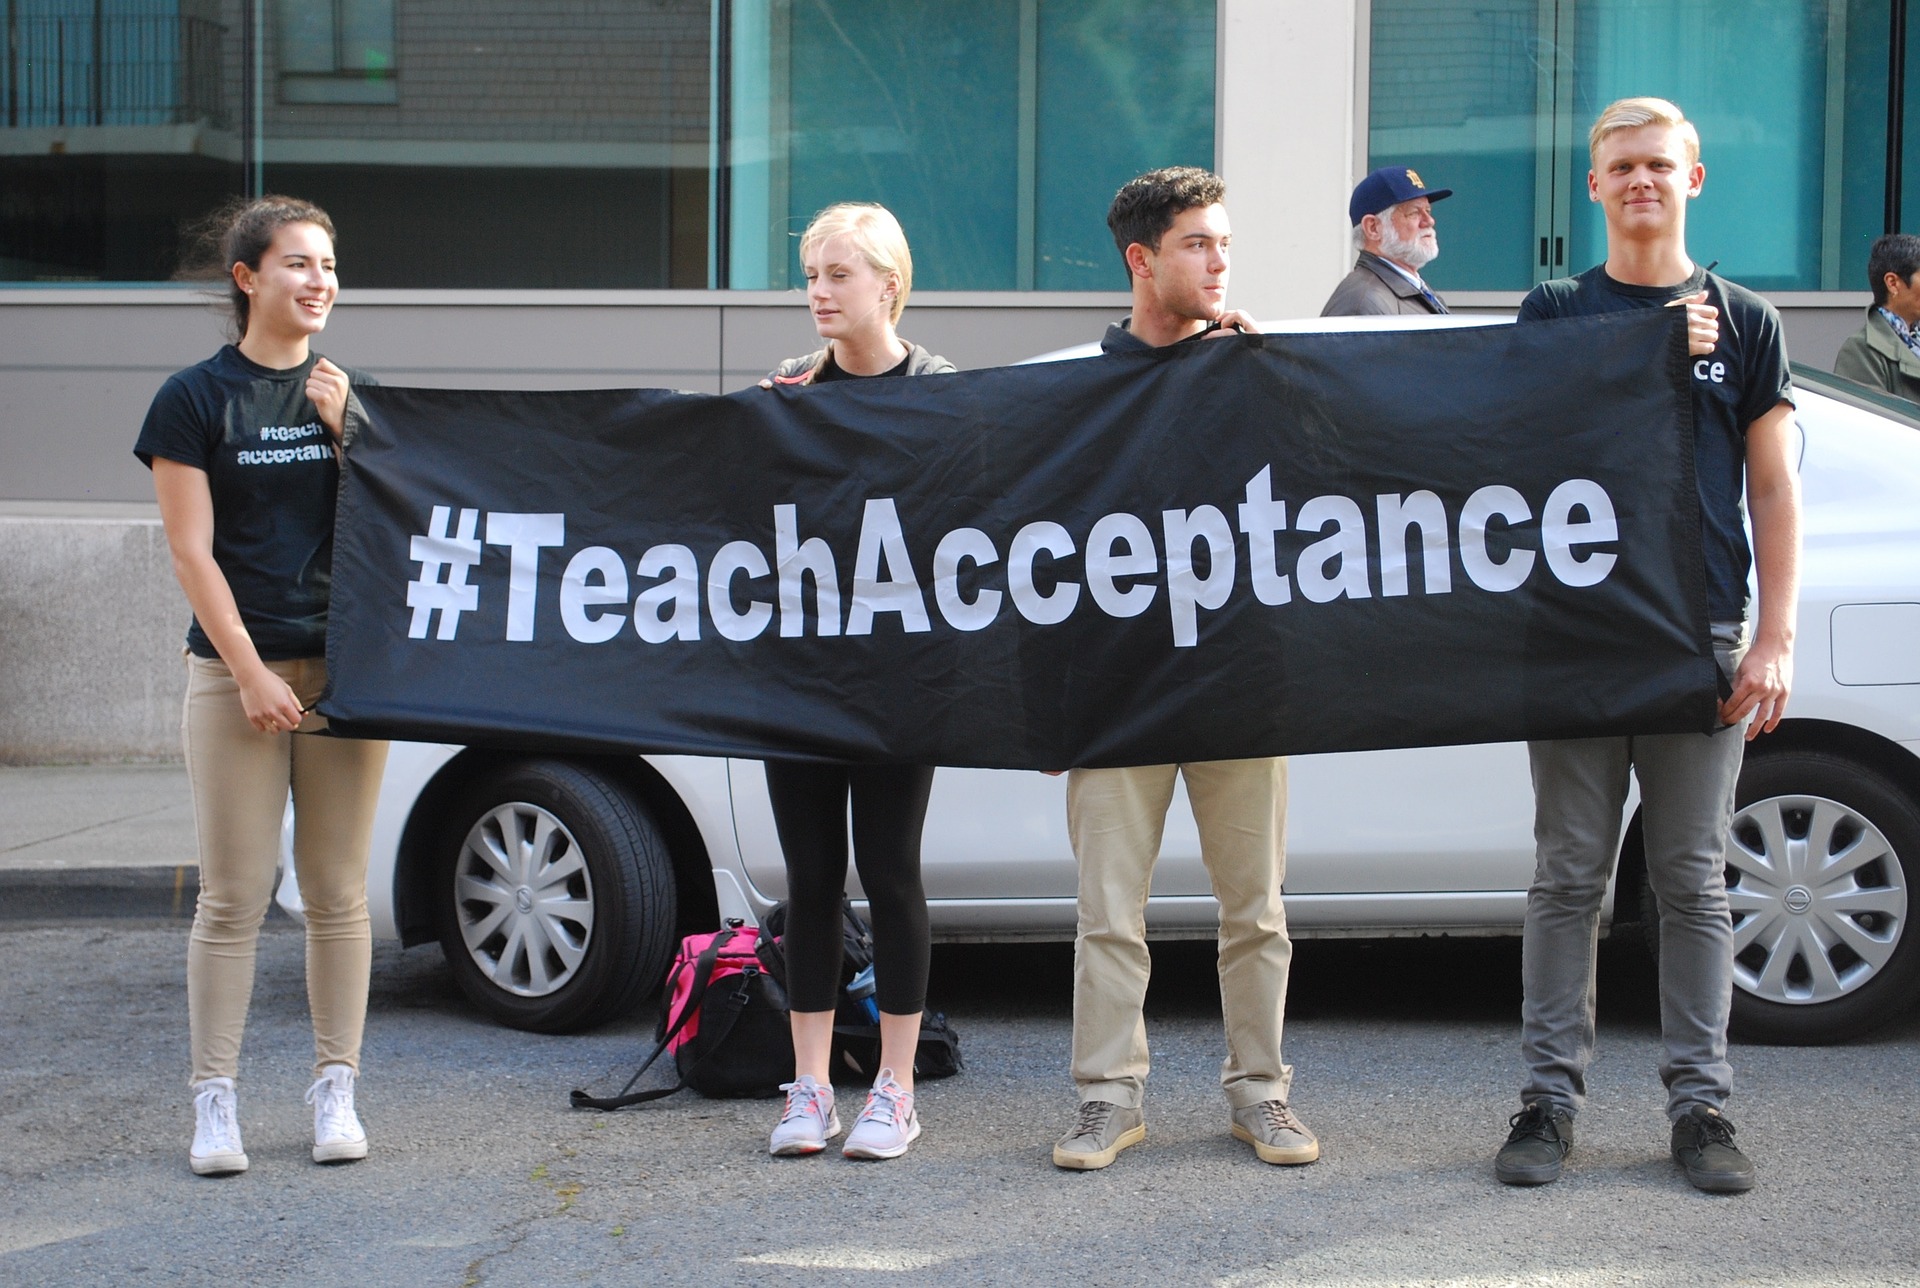 Teach acceptance